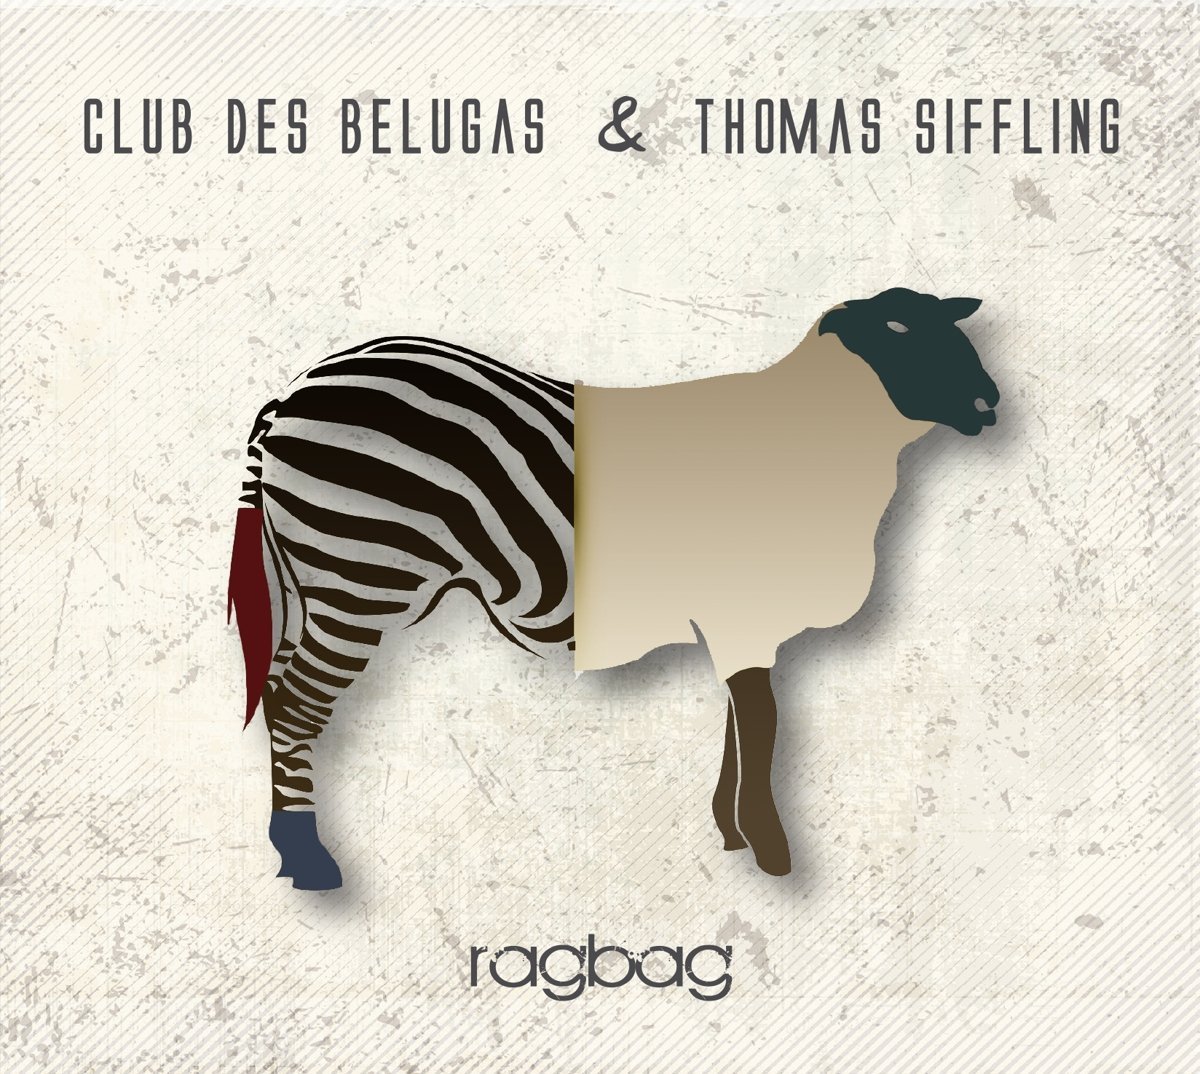 CLUB DES BELUGAS - Club des Belugas & Thomas Siffling : Ragbag cover 